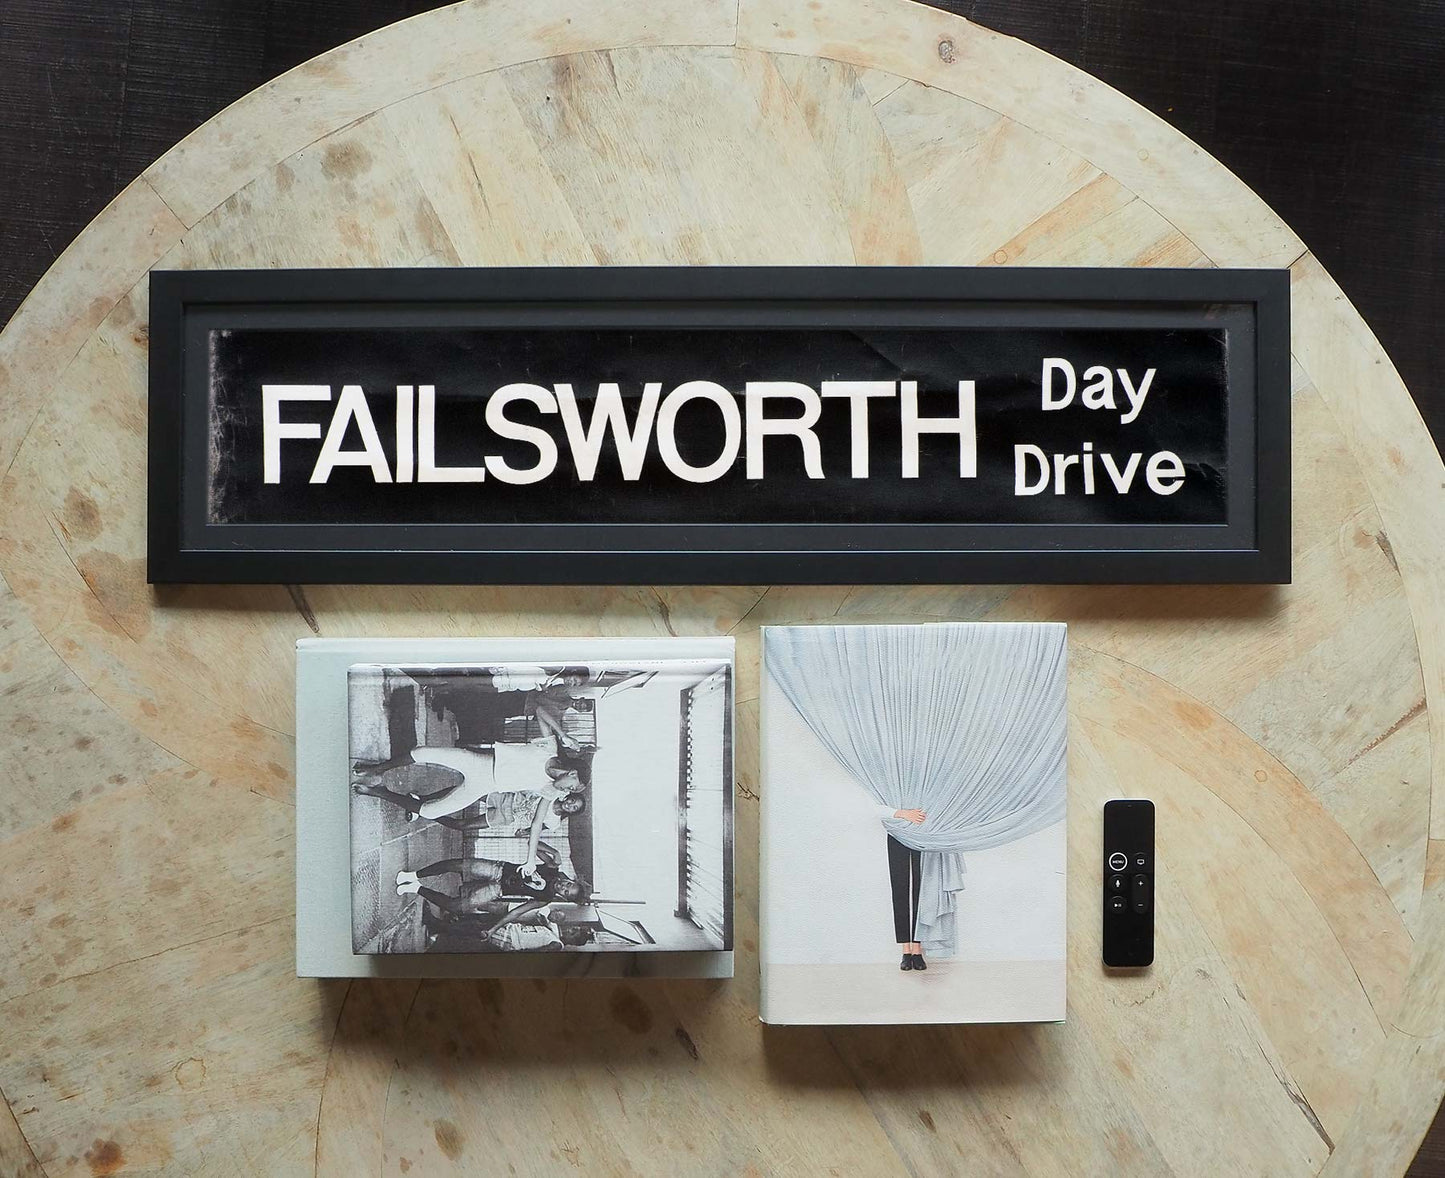 Failsworth Day Drive Framed Bus Blind